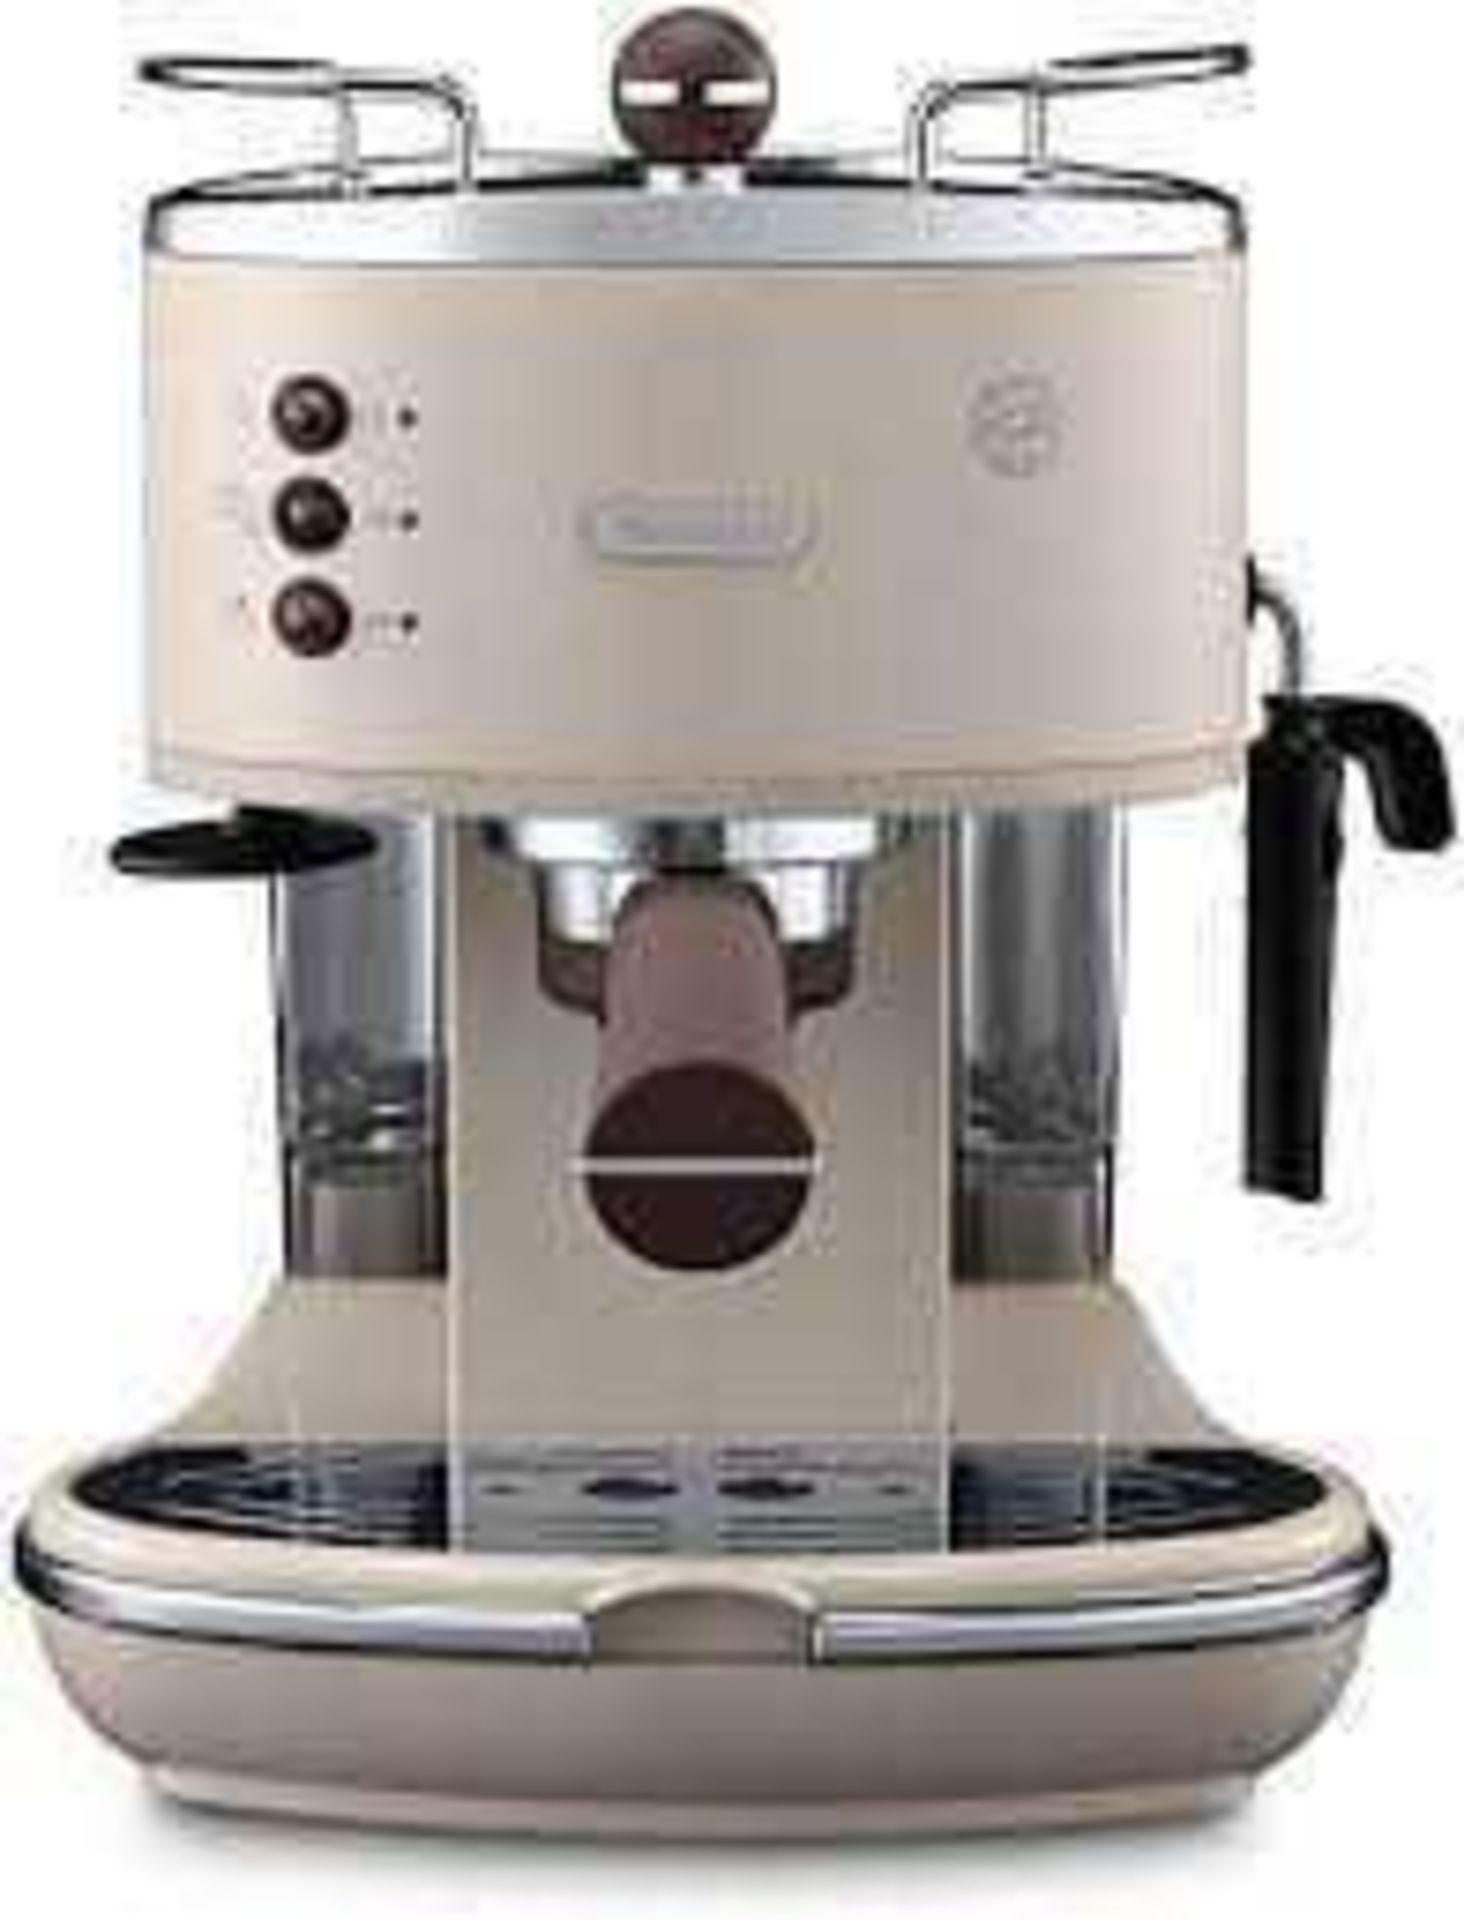 RRP £150 Boxed Delonghi Icona Vintage Espresso And Cappuccino Coffee Maker